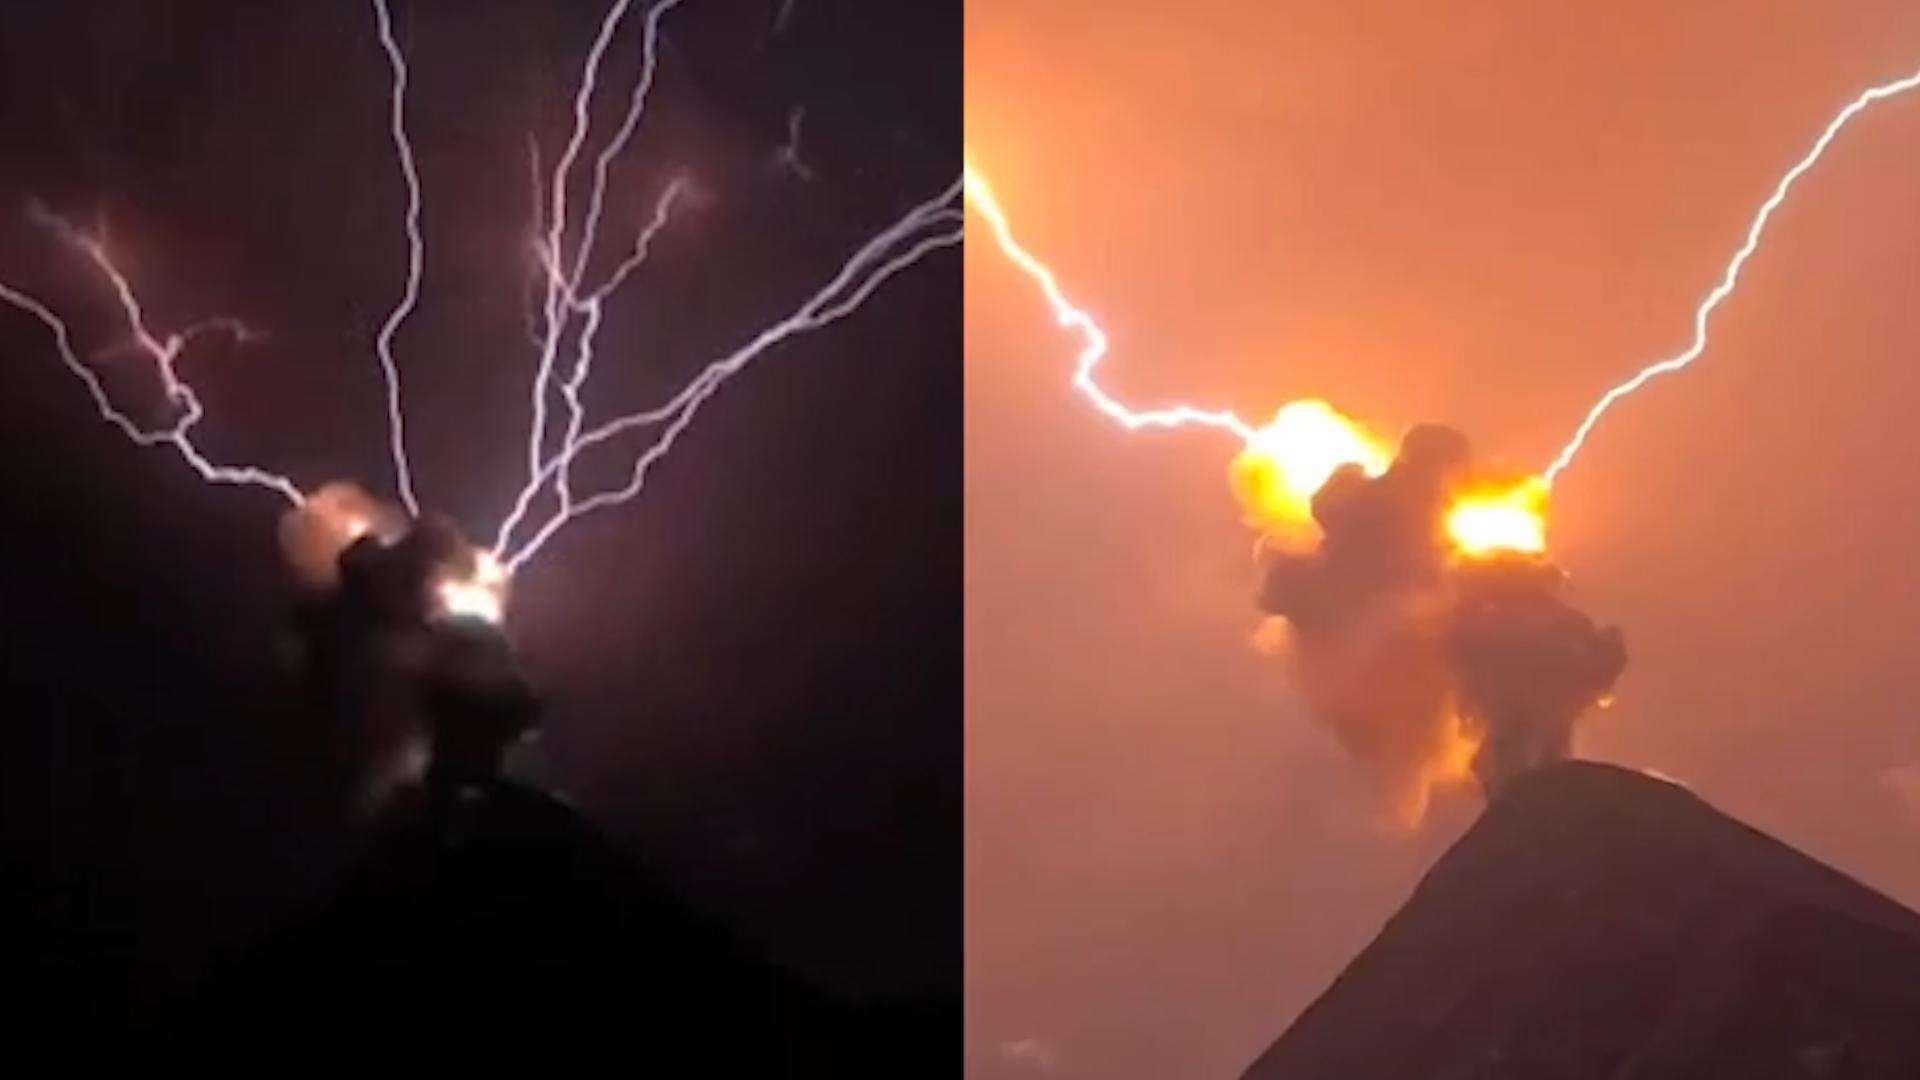 Spektakulärer Moment! Blitz schlägt in Vulkan ein Atemberaubende Aufnahme in Guatemala